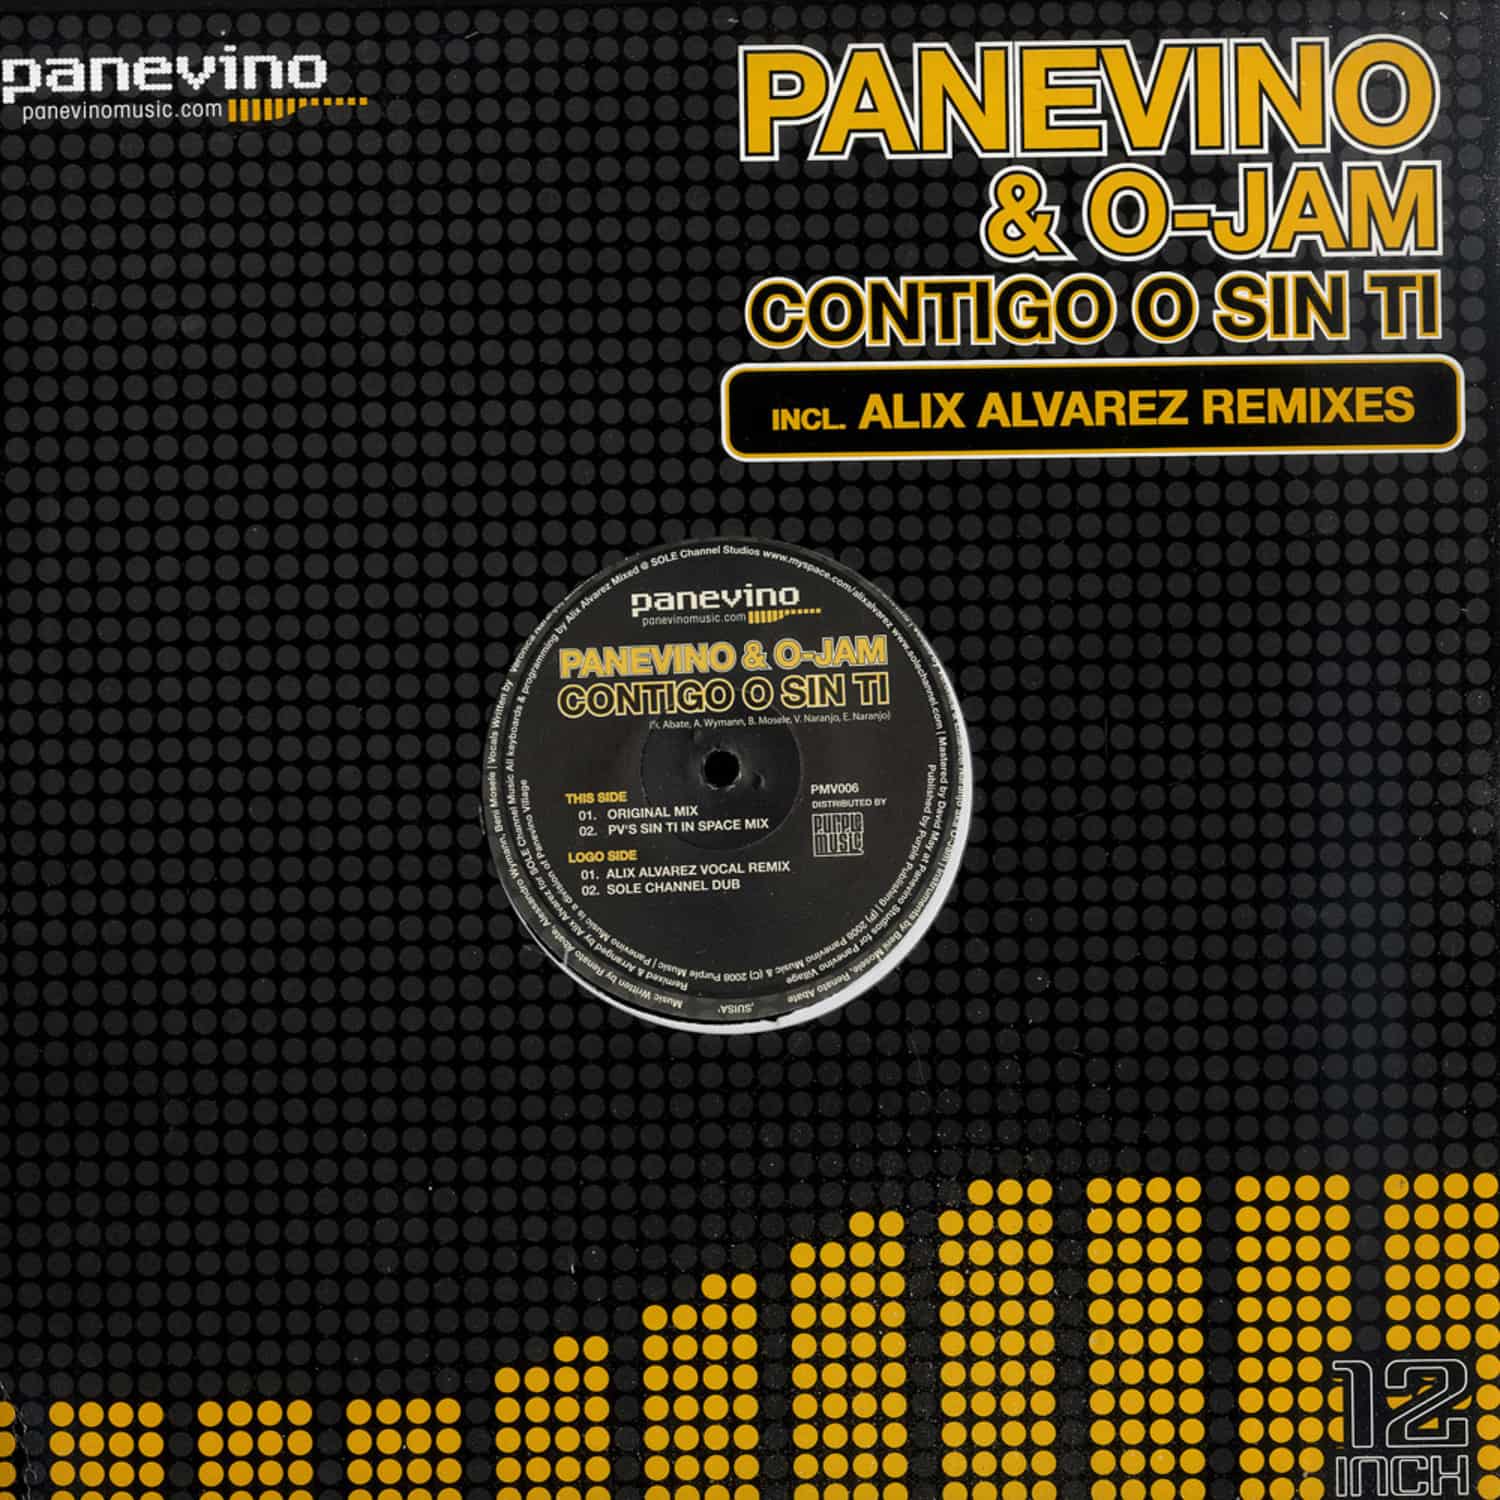 Panevino And O-jam - CONTIGO O SIN TI